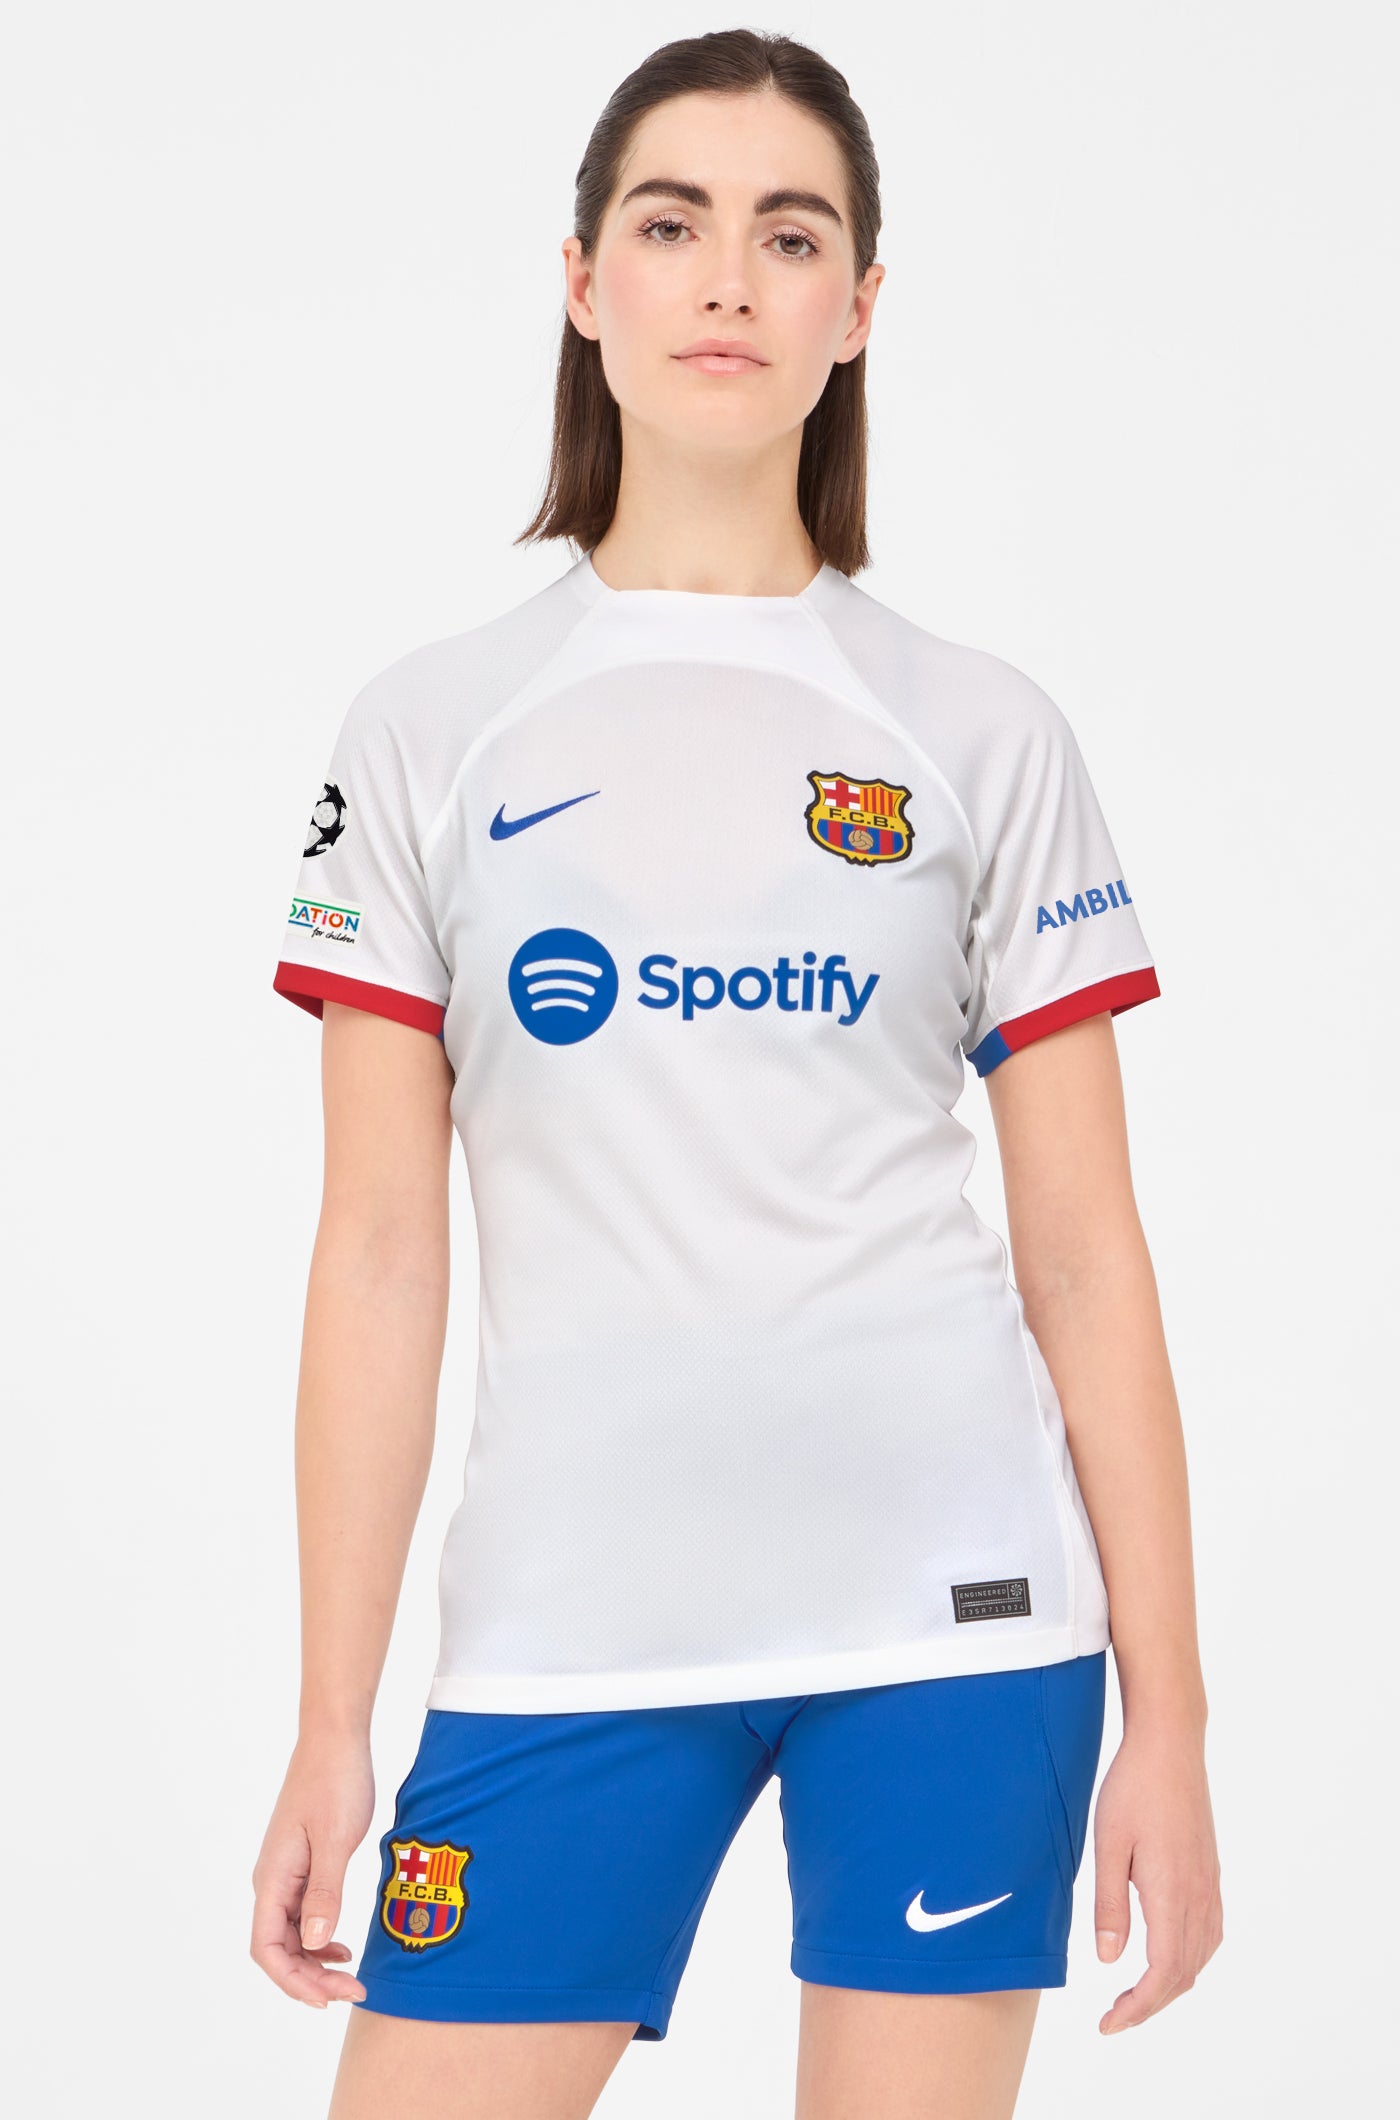 UCL FC Barcelona away shirt 23/24 - Women  - MARCOS A.